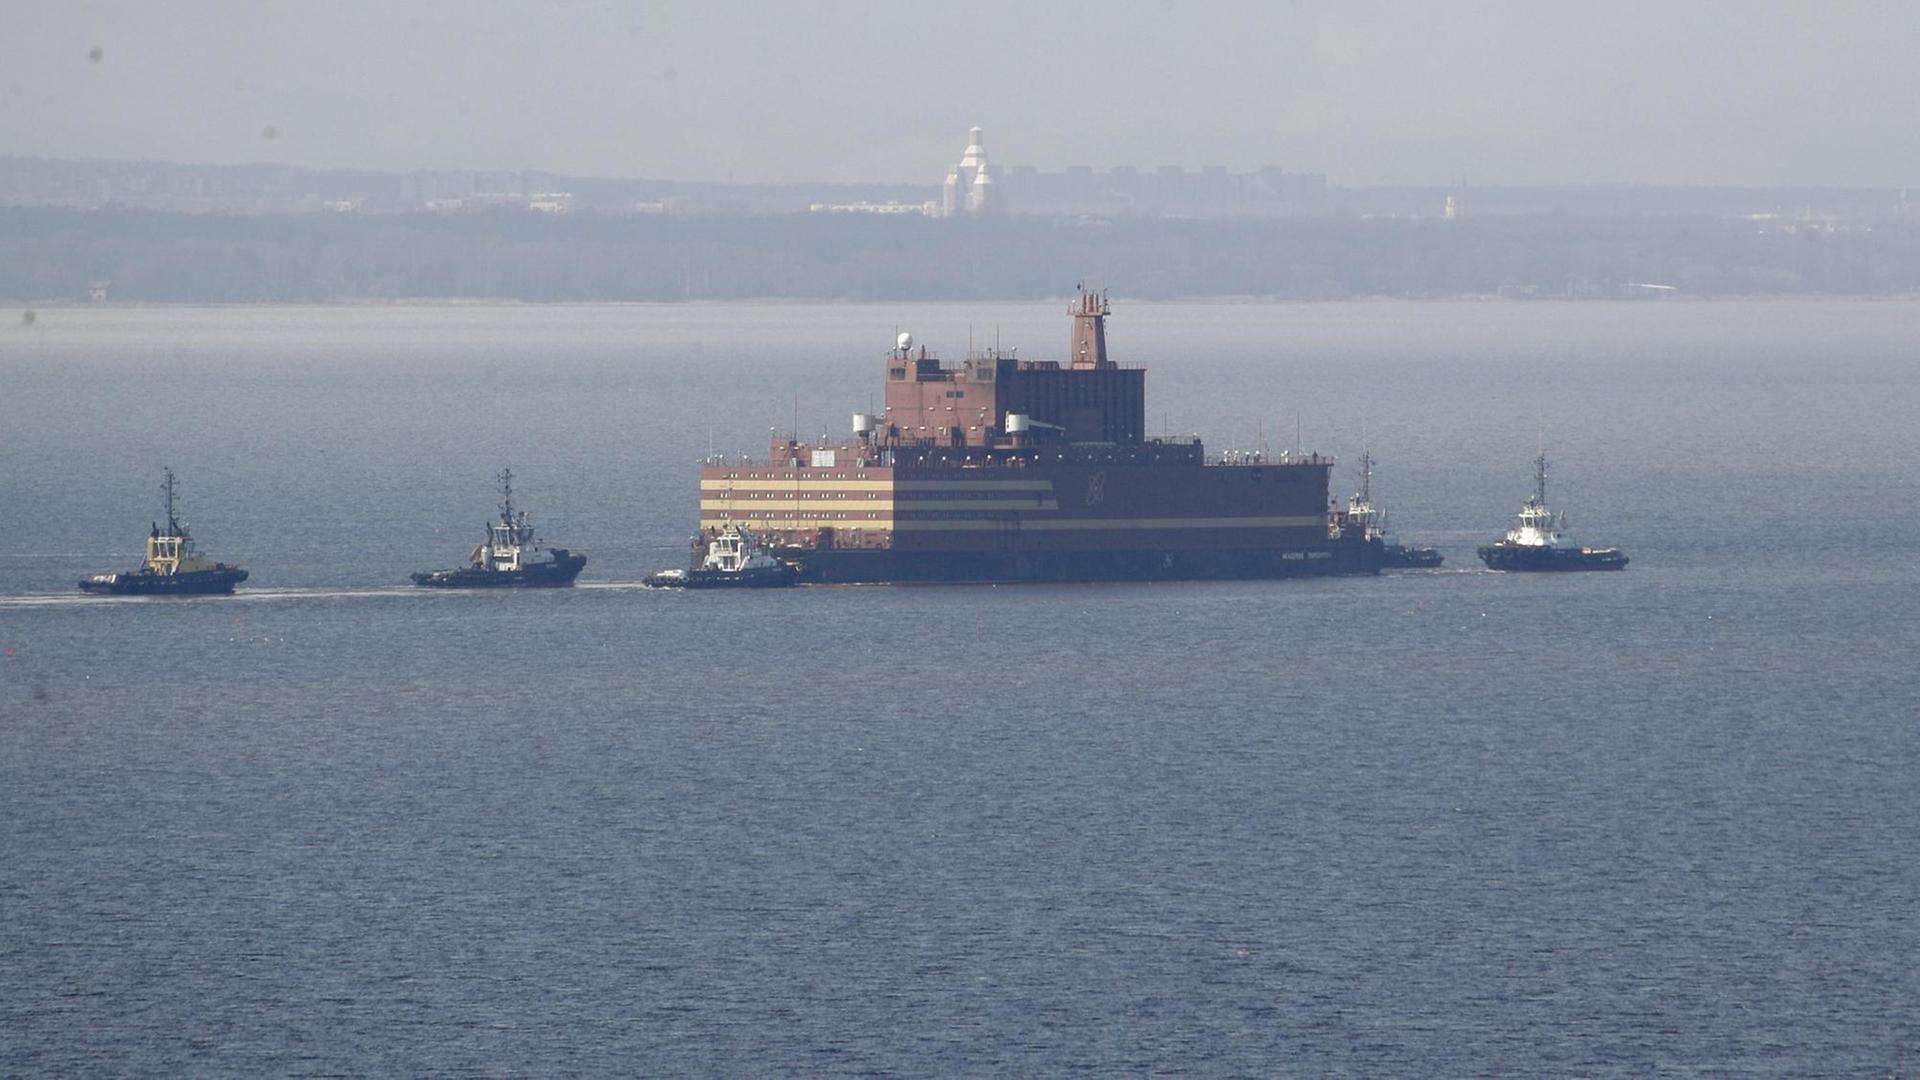 Das Bild zeigt das umstrittene "Schwimmende Atomkraftwerk" Russlands, die "Akademik Lomonossow", die hier im Wasser von Beibooten eskortiert wird.